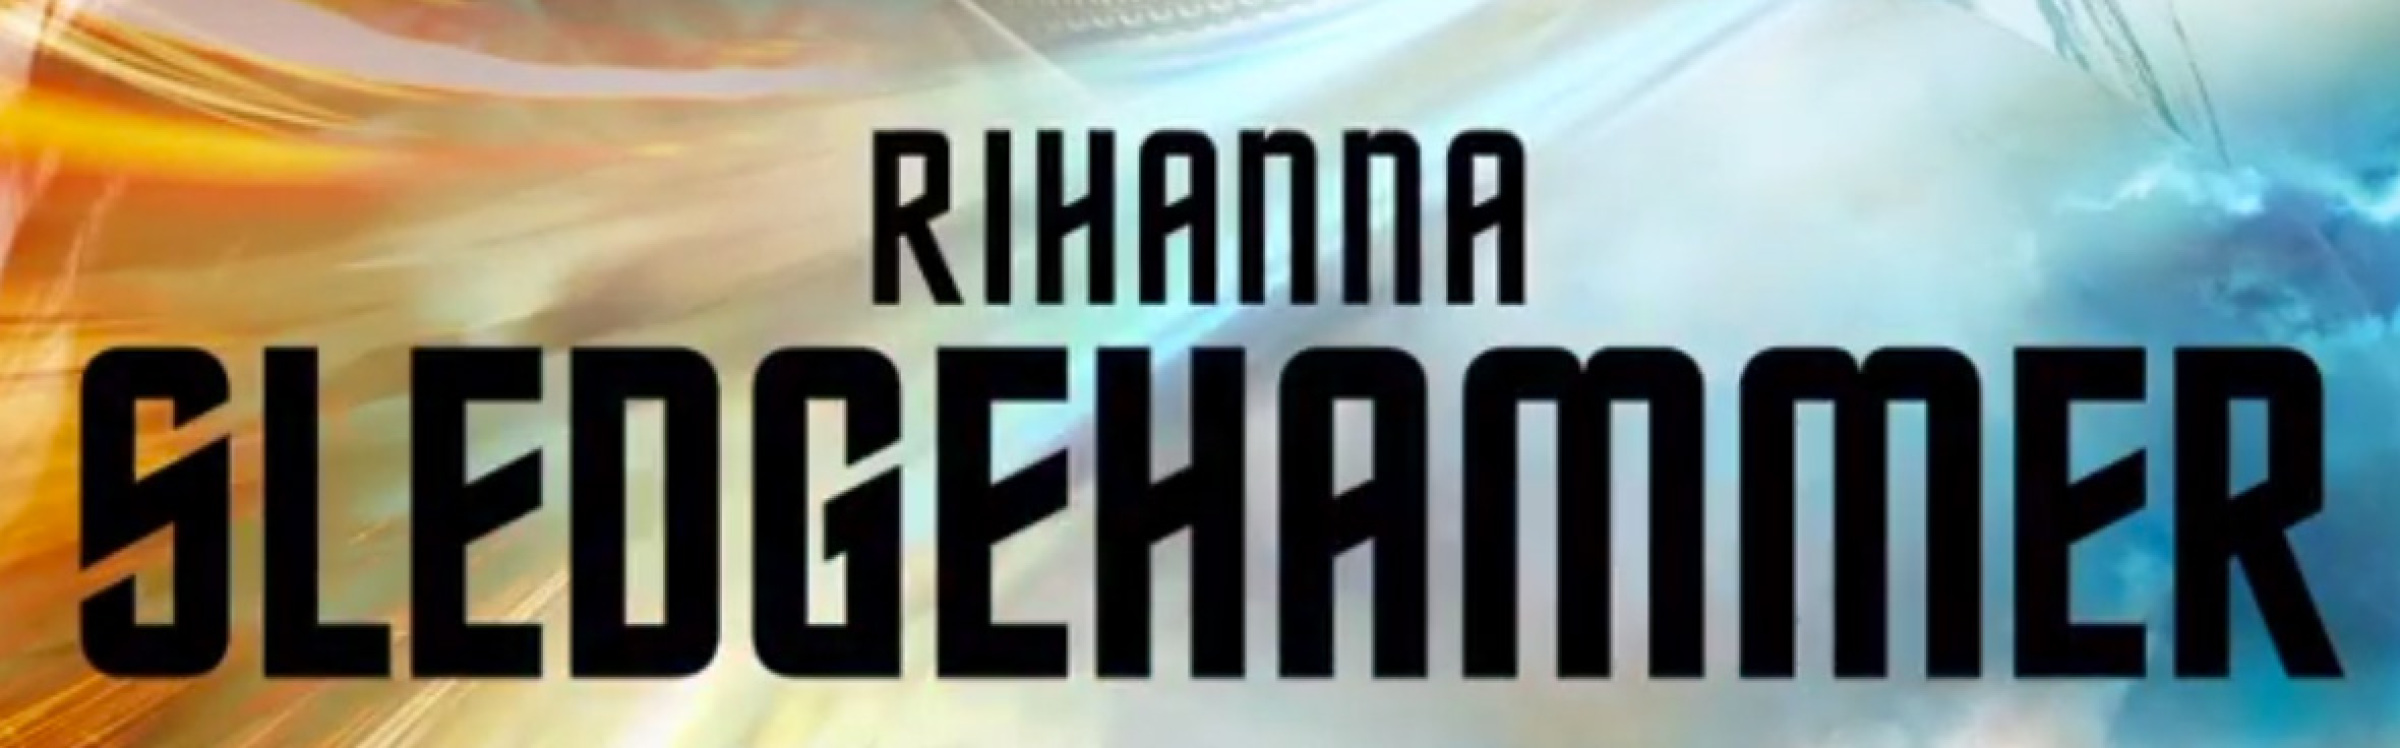 Rihanna sledgehammer2